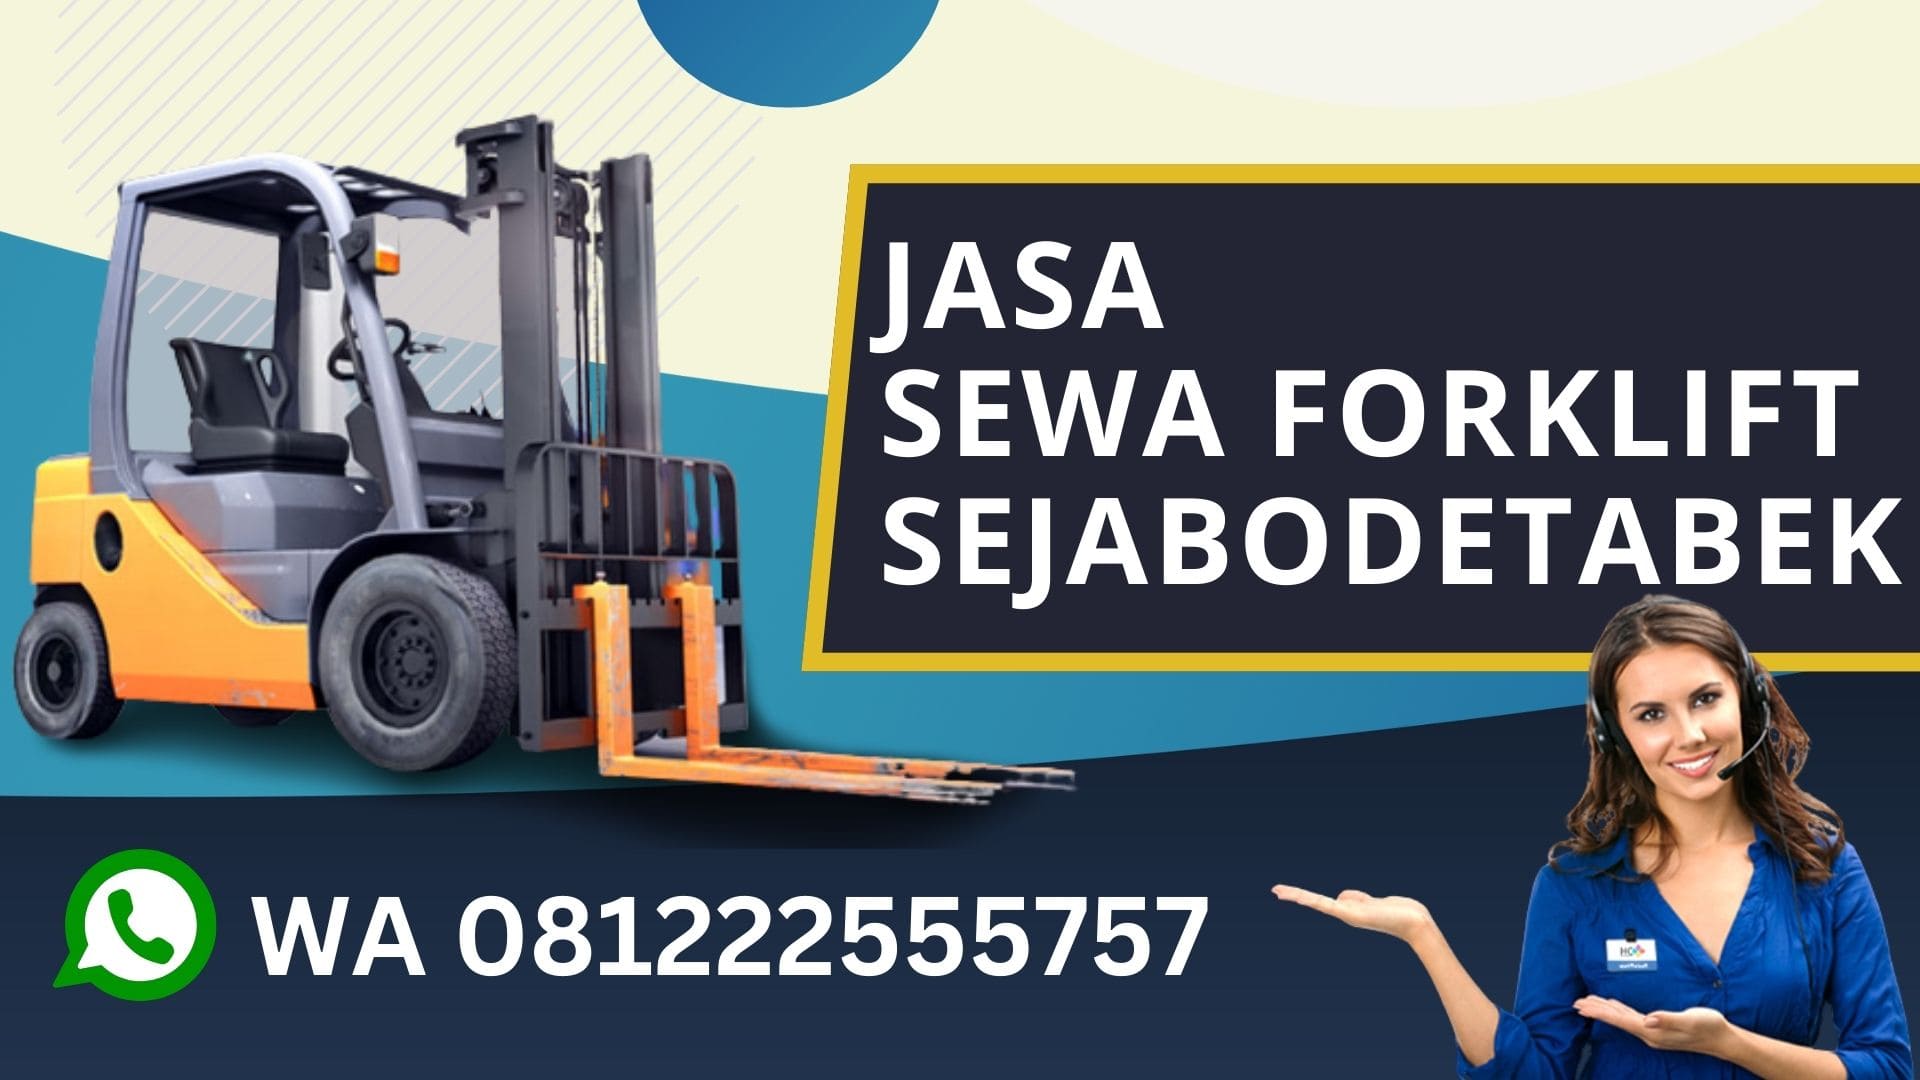 WA 081222555757 Sewa Forklift Pulo Gadung Jakarta Timur, Rental Forklift, biaya sewa forklift harian, rental forklift bulanan